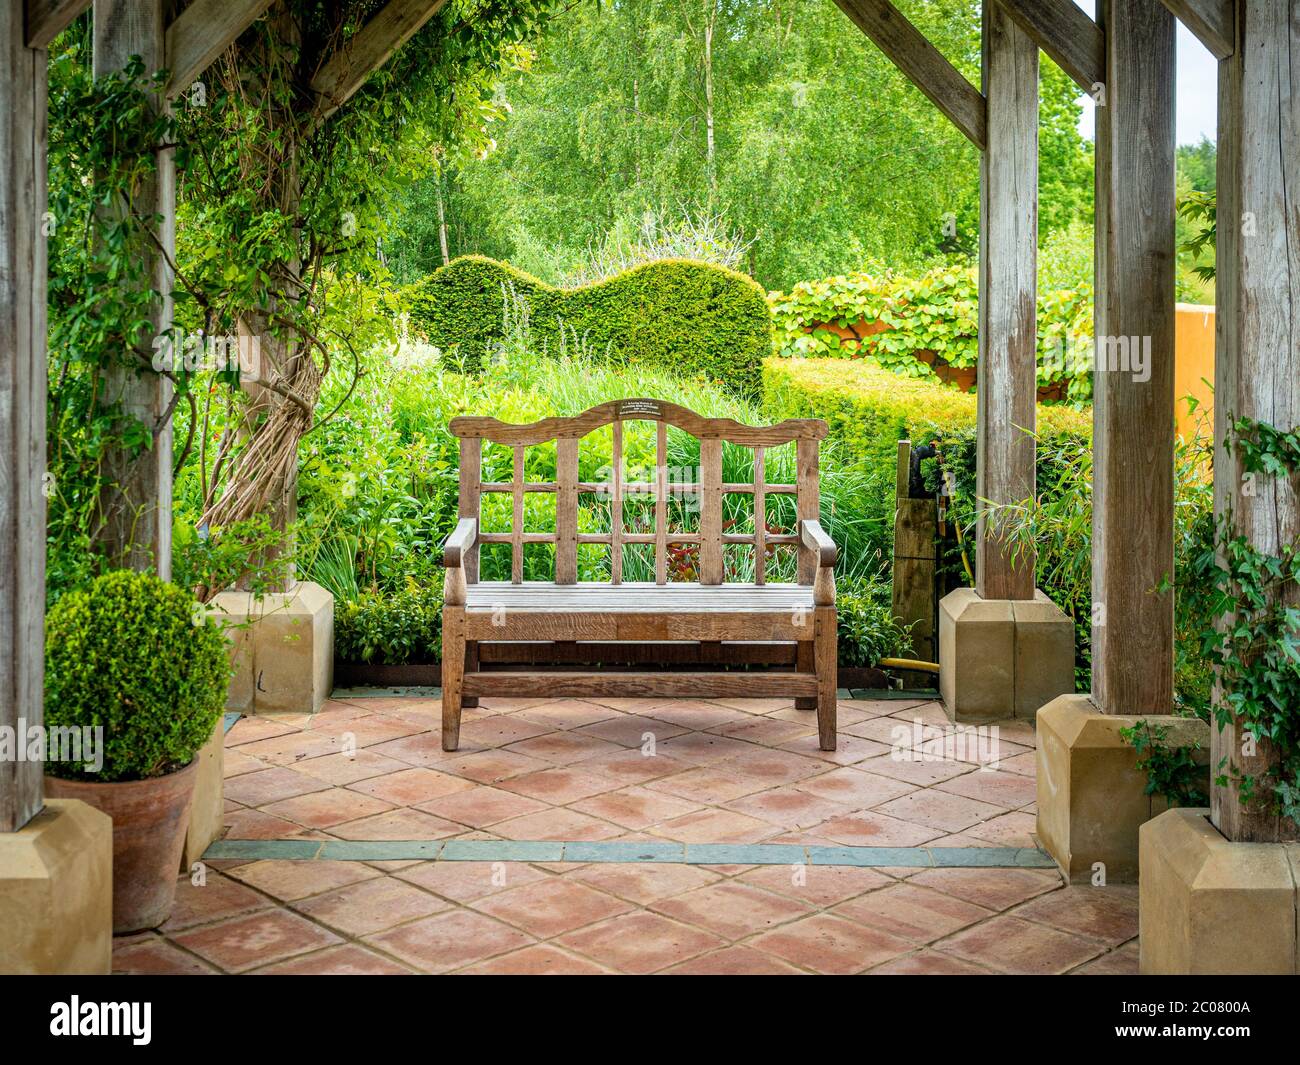 Vuoto giardino posto sotto un pergola a Harlow Carr Gardens in Harrogate, UK Foto Stock